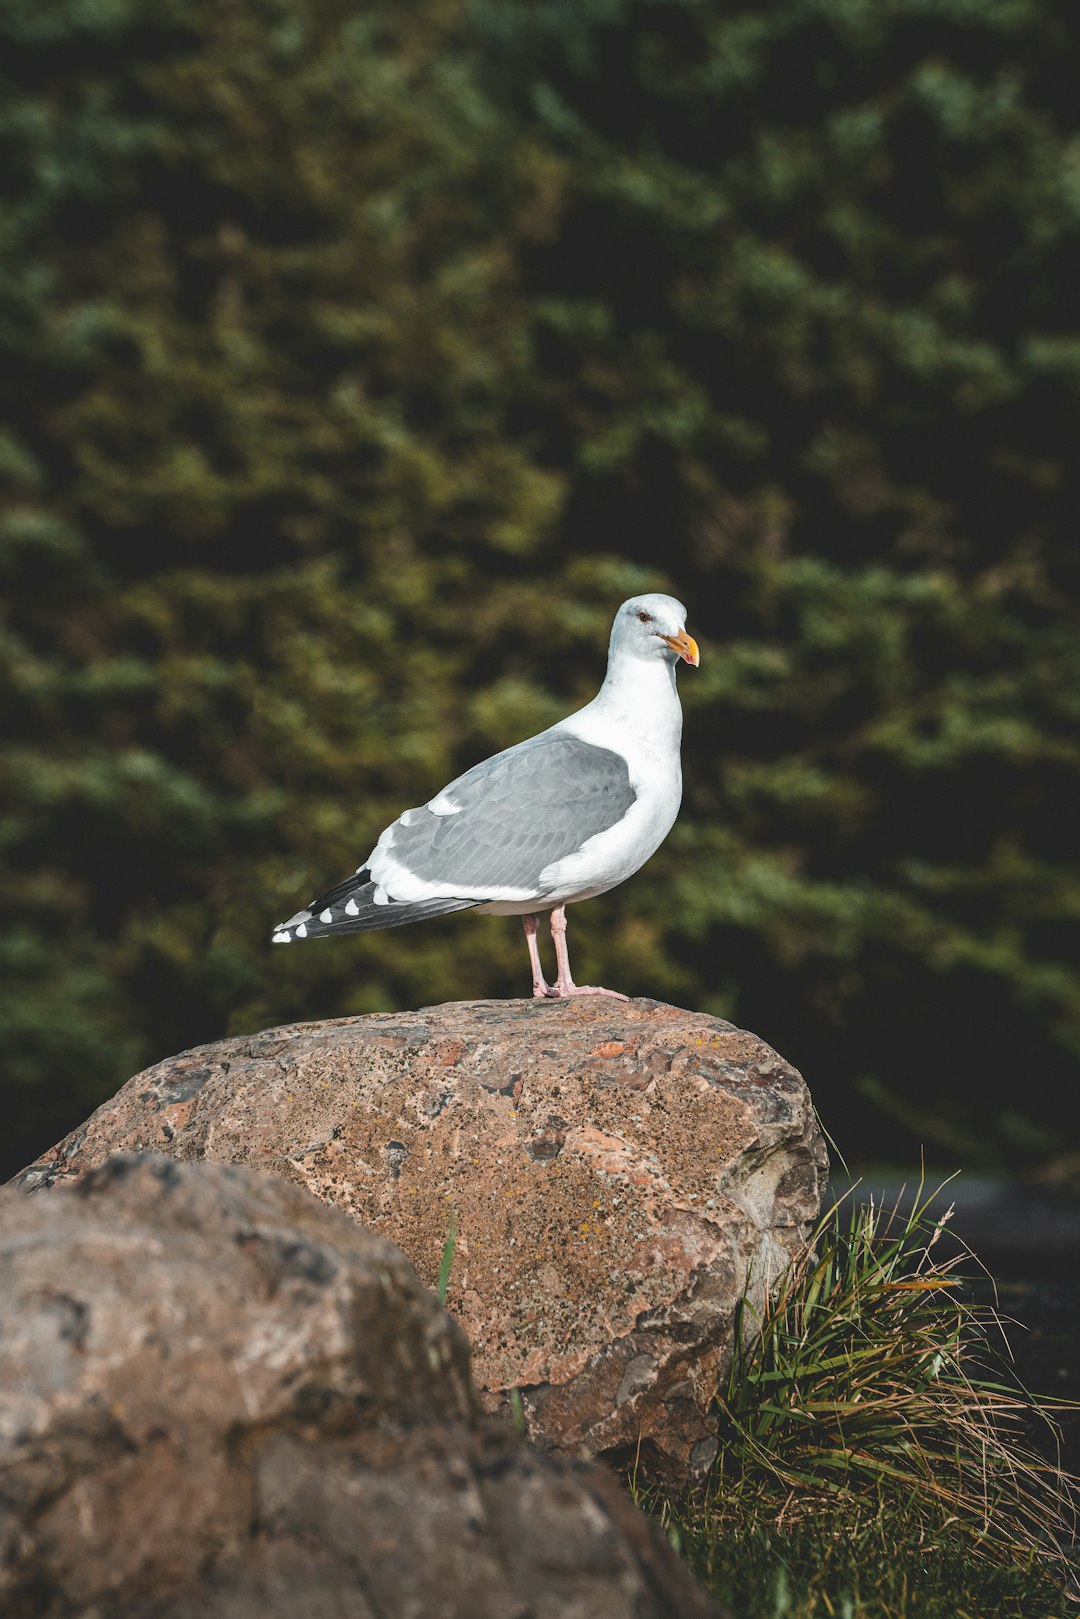 white and grey bird on stone